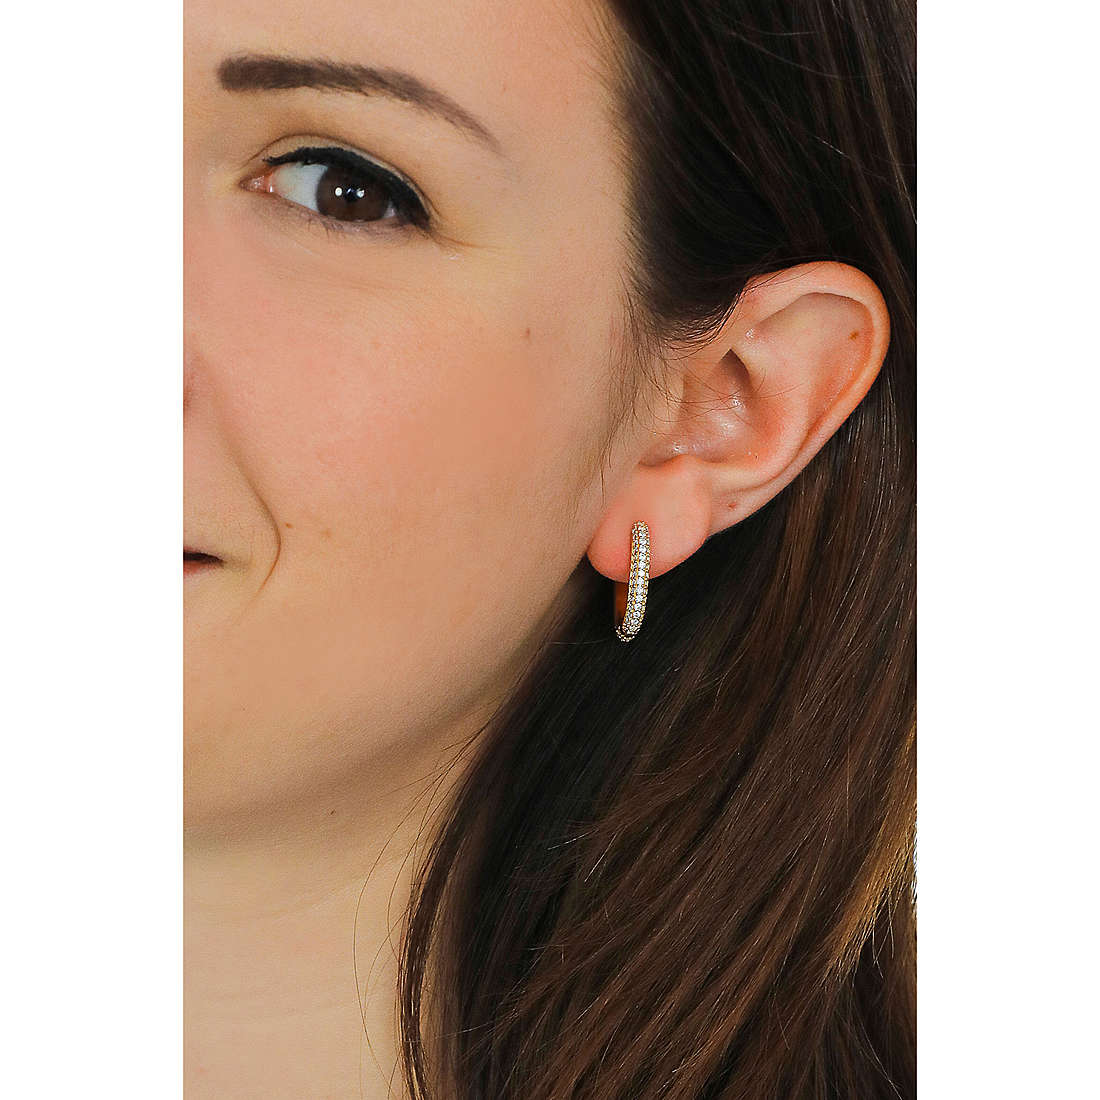 Rebecca earrings Golden ear woman SGEOOB16 wearing